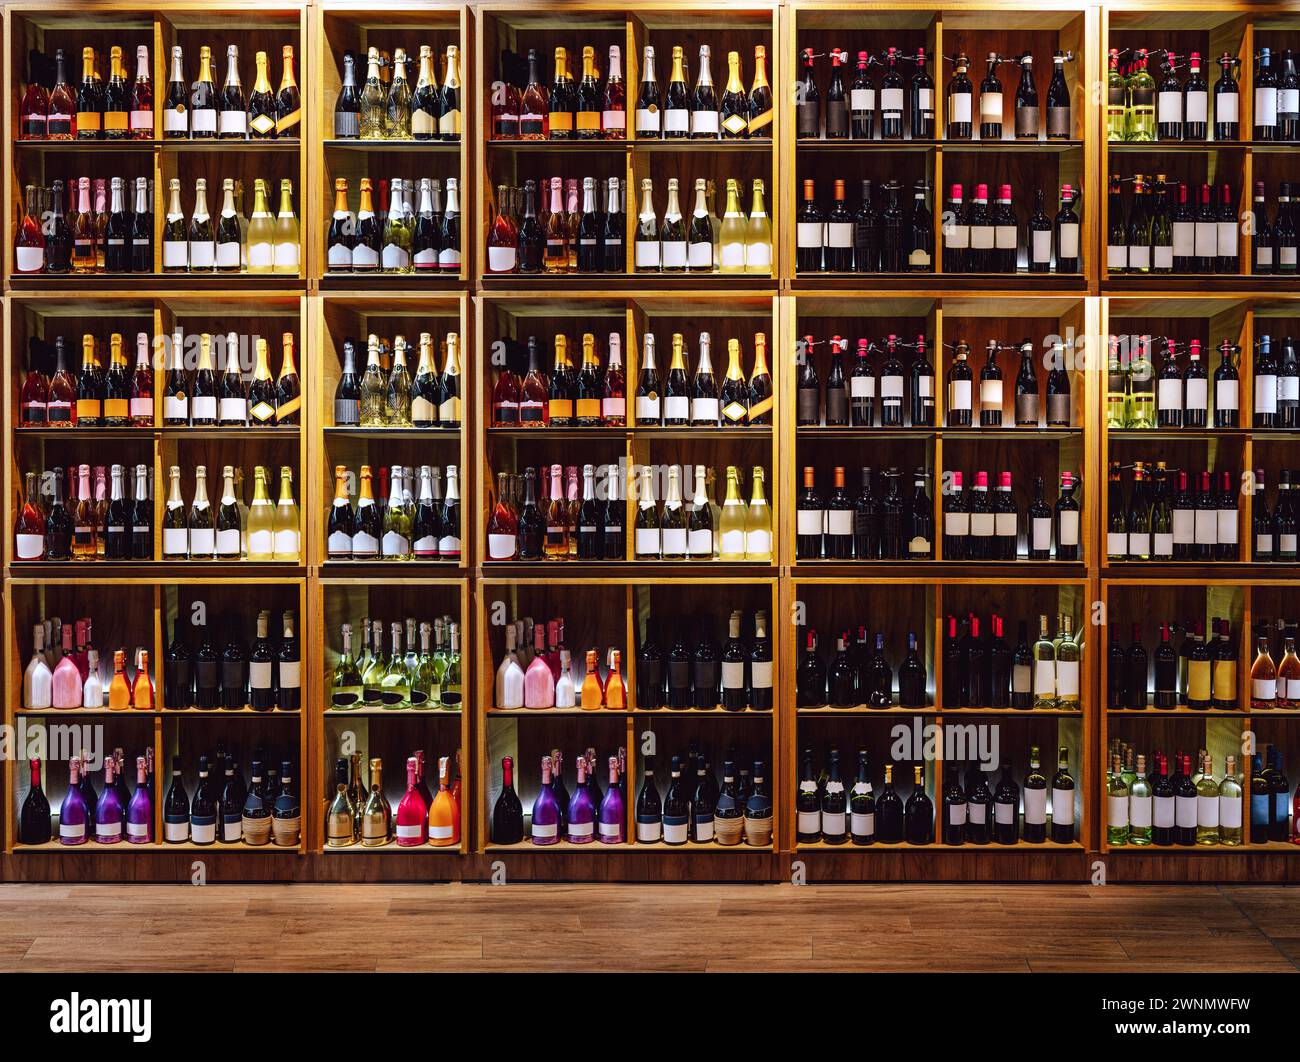 Blick von vorne auf die Regale mit großer Weinauswahl. Wein- und Sektflaschen auf den Regalen. Stockfoto